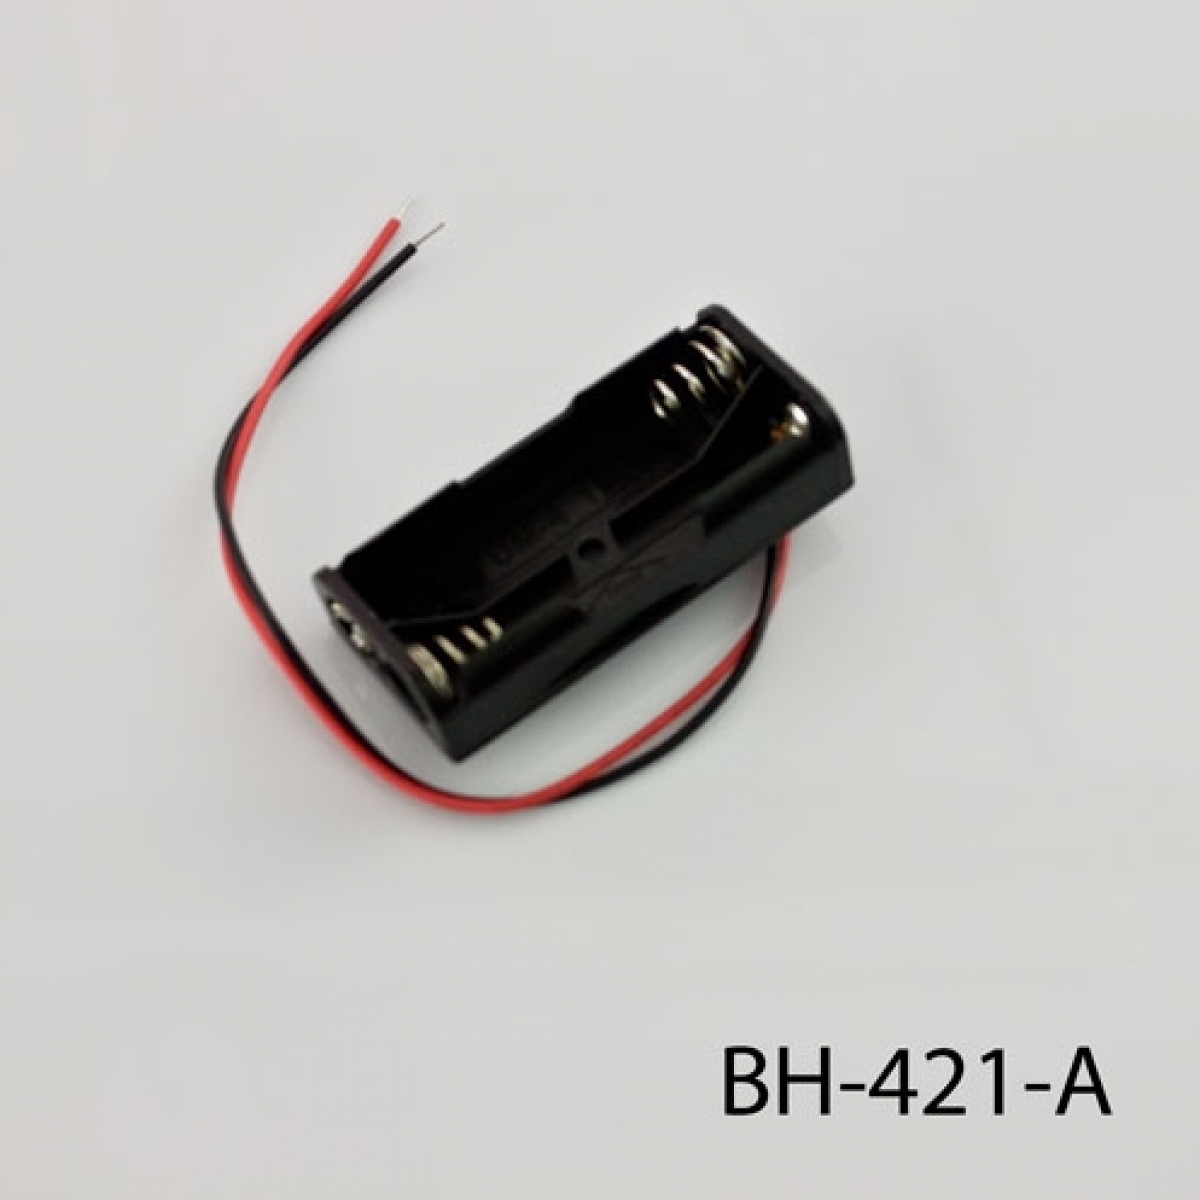 BH-421-A 2xAAA